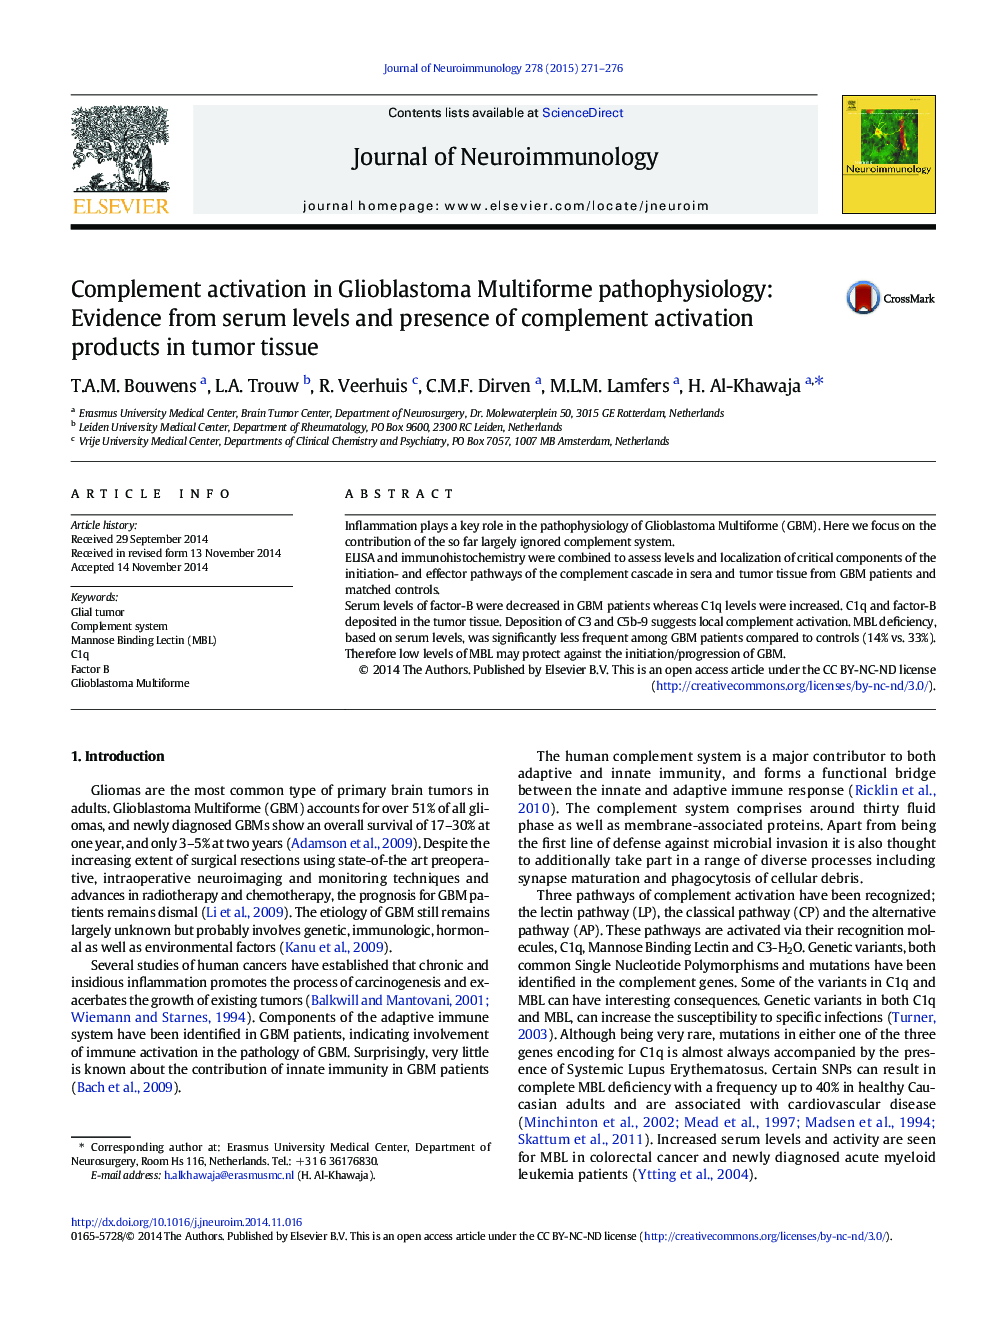 فعال سازی تکمیلی در گلیوبلاستوما پاتوفیزیولوژی چندگانه: شواهد از سطح سرمی و حضور محصولات فعال سازی مکمل در بافت تومور 